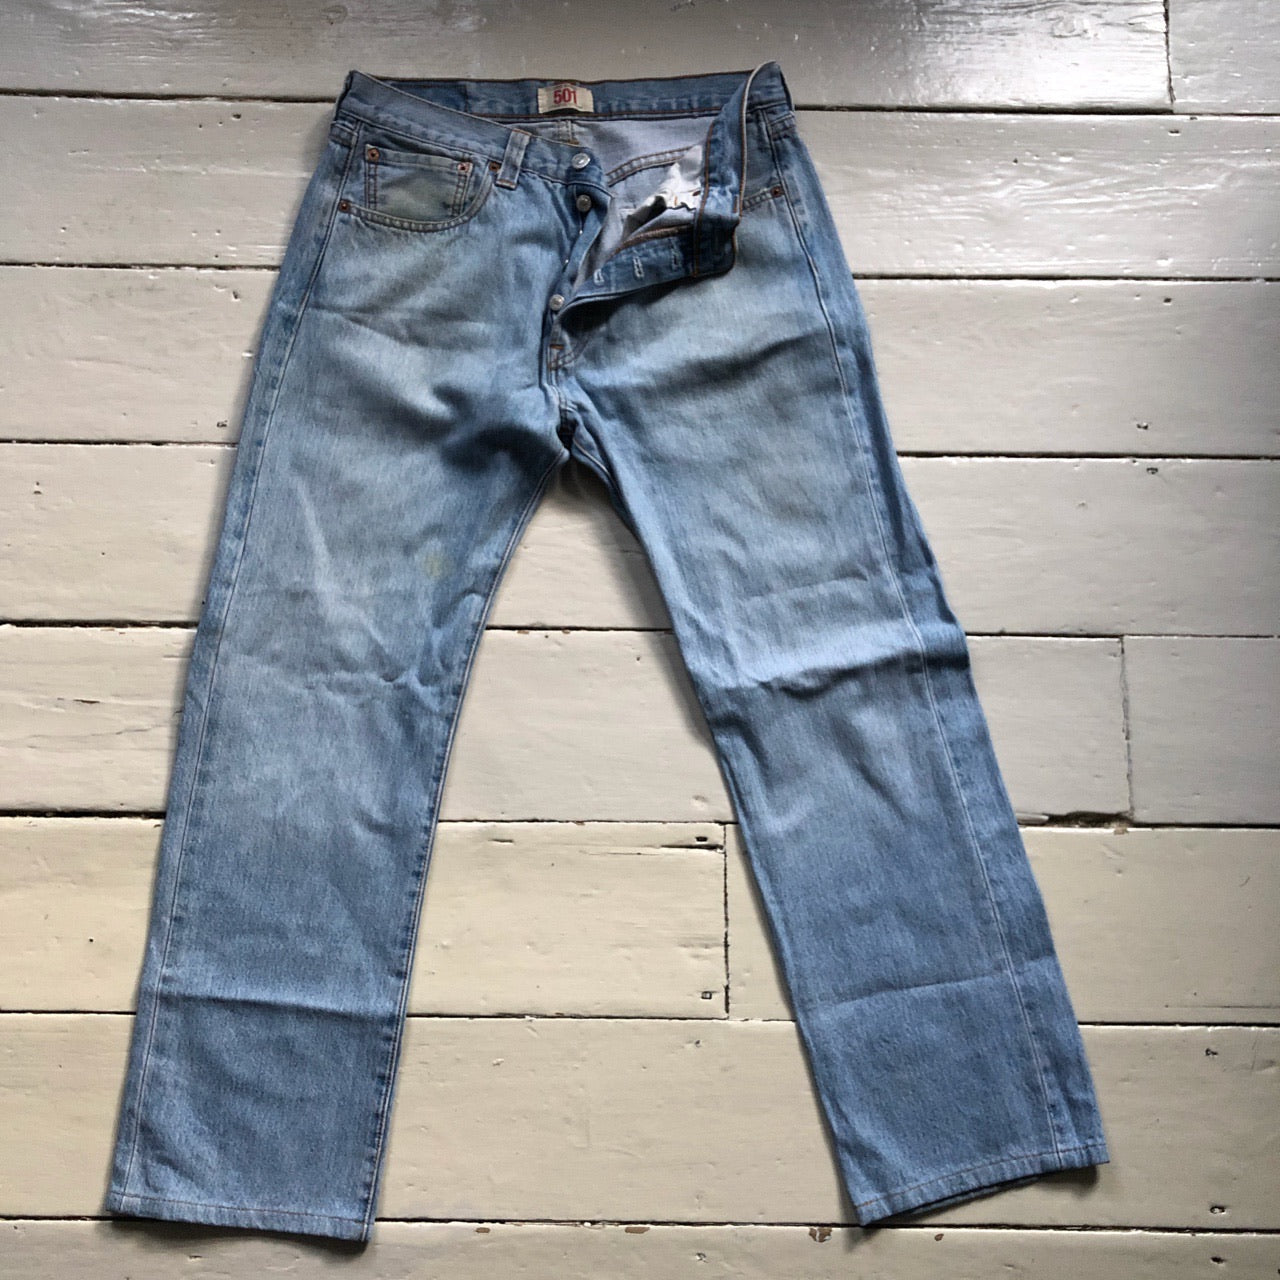 Levis 501 Light Wash Jeans (32/28)